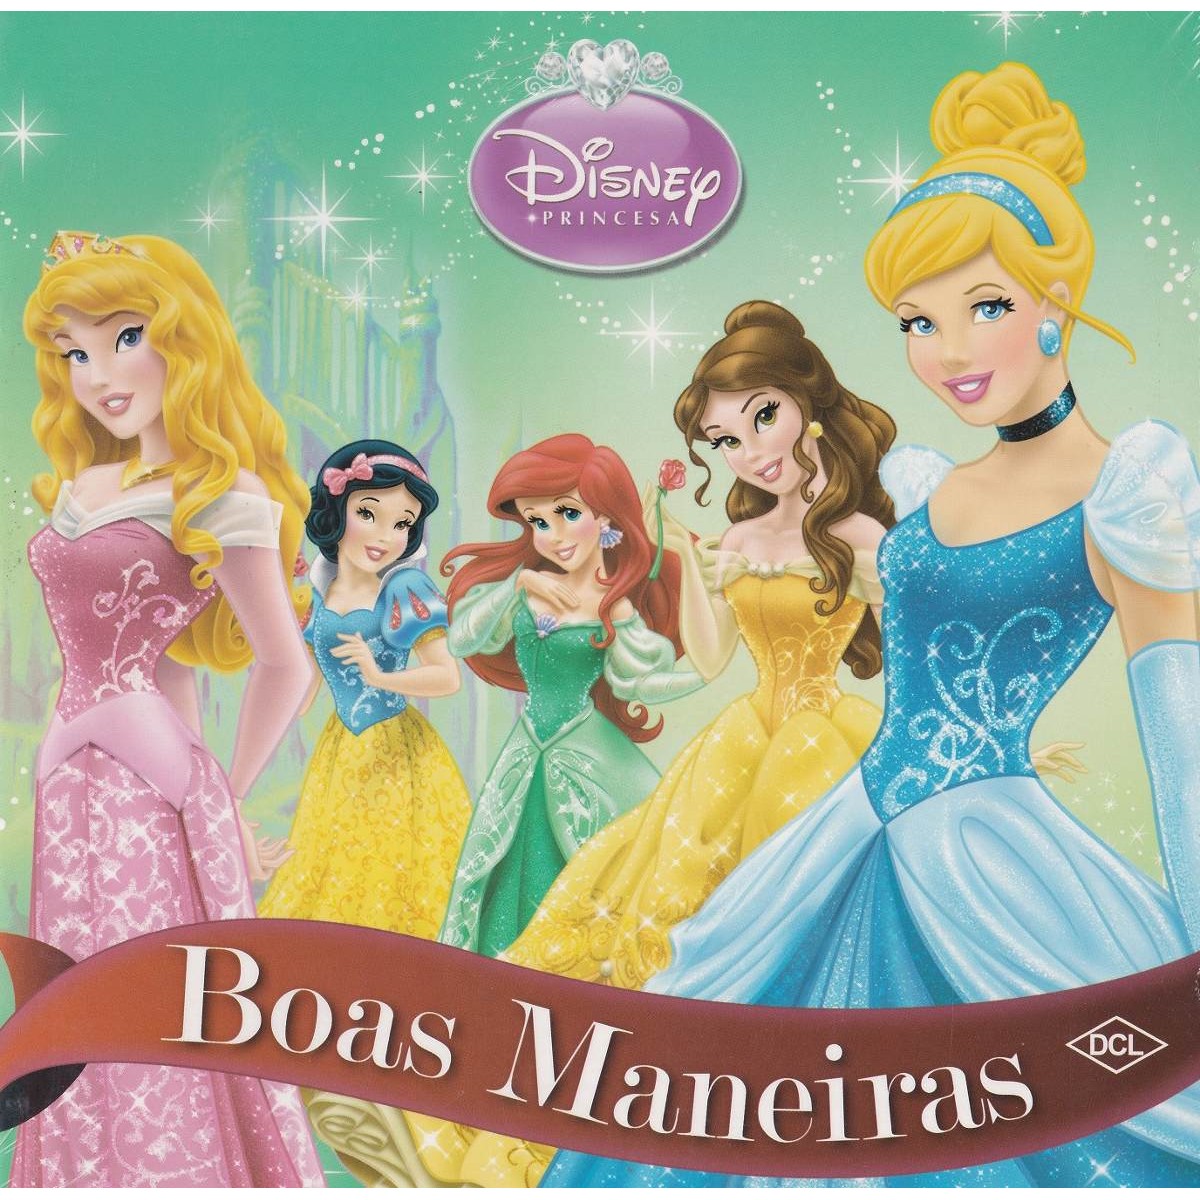 Jogos das Princesas da Disney Online